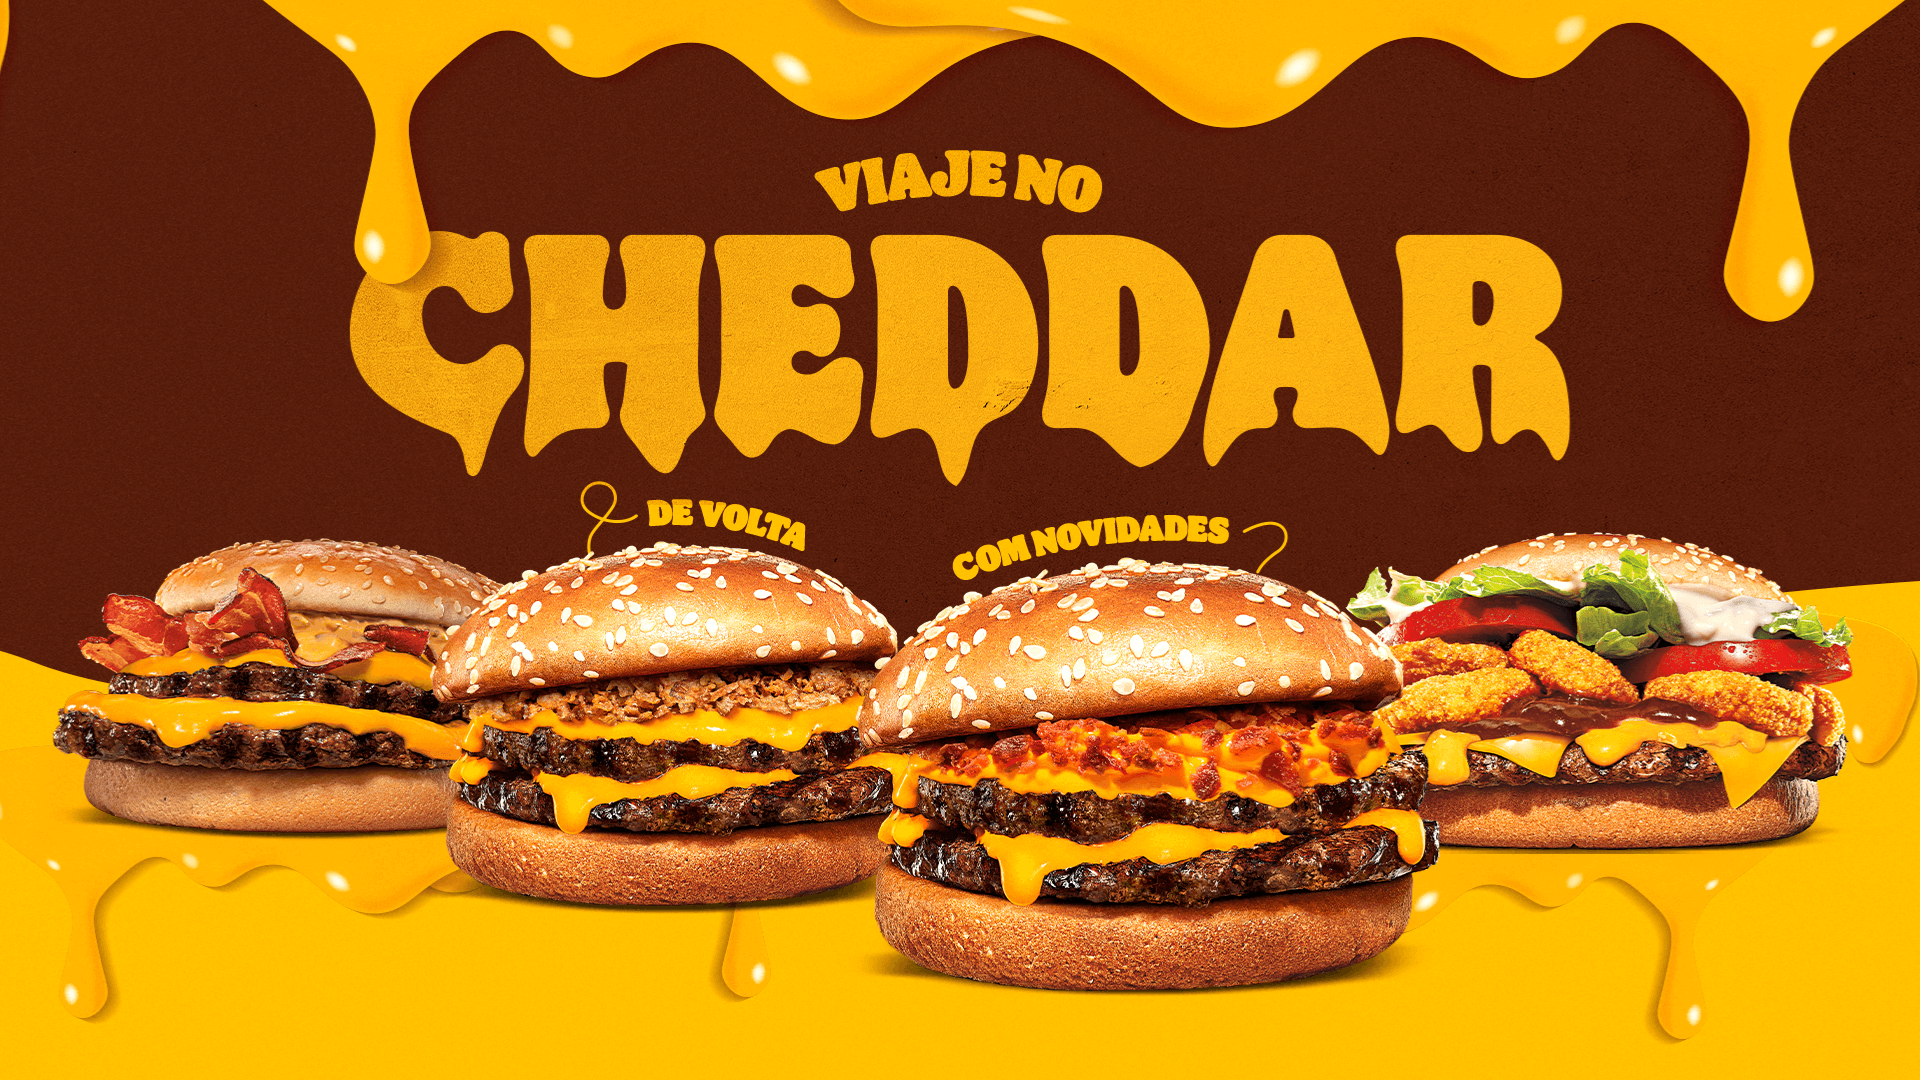 Burger King da Avenida Paulista tem ativação "cheddarliciosa" neste fim de semana